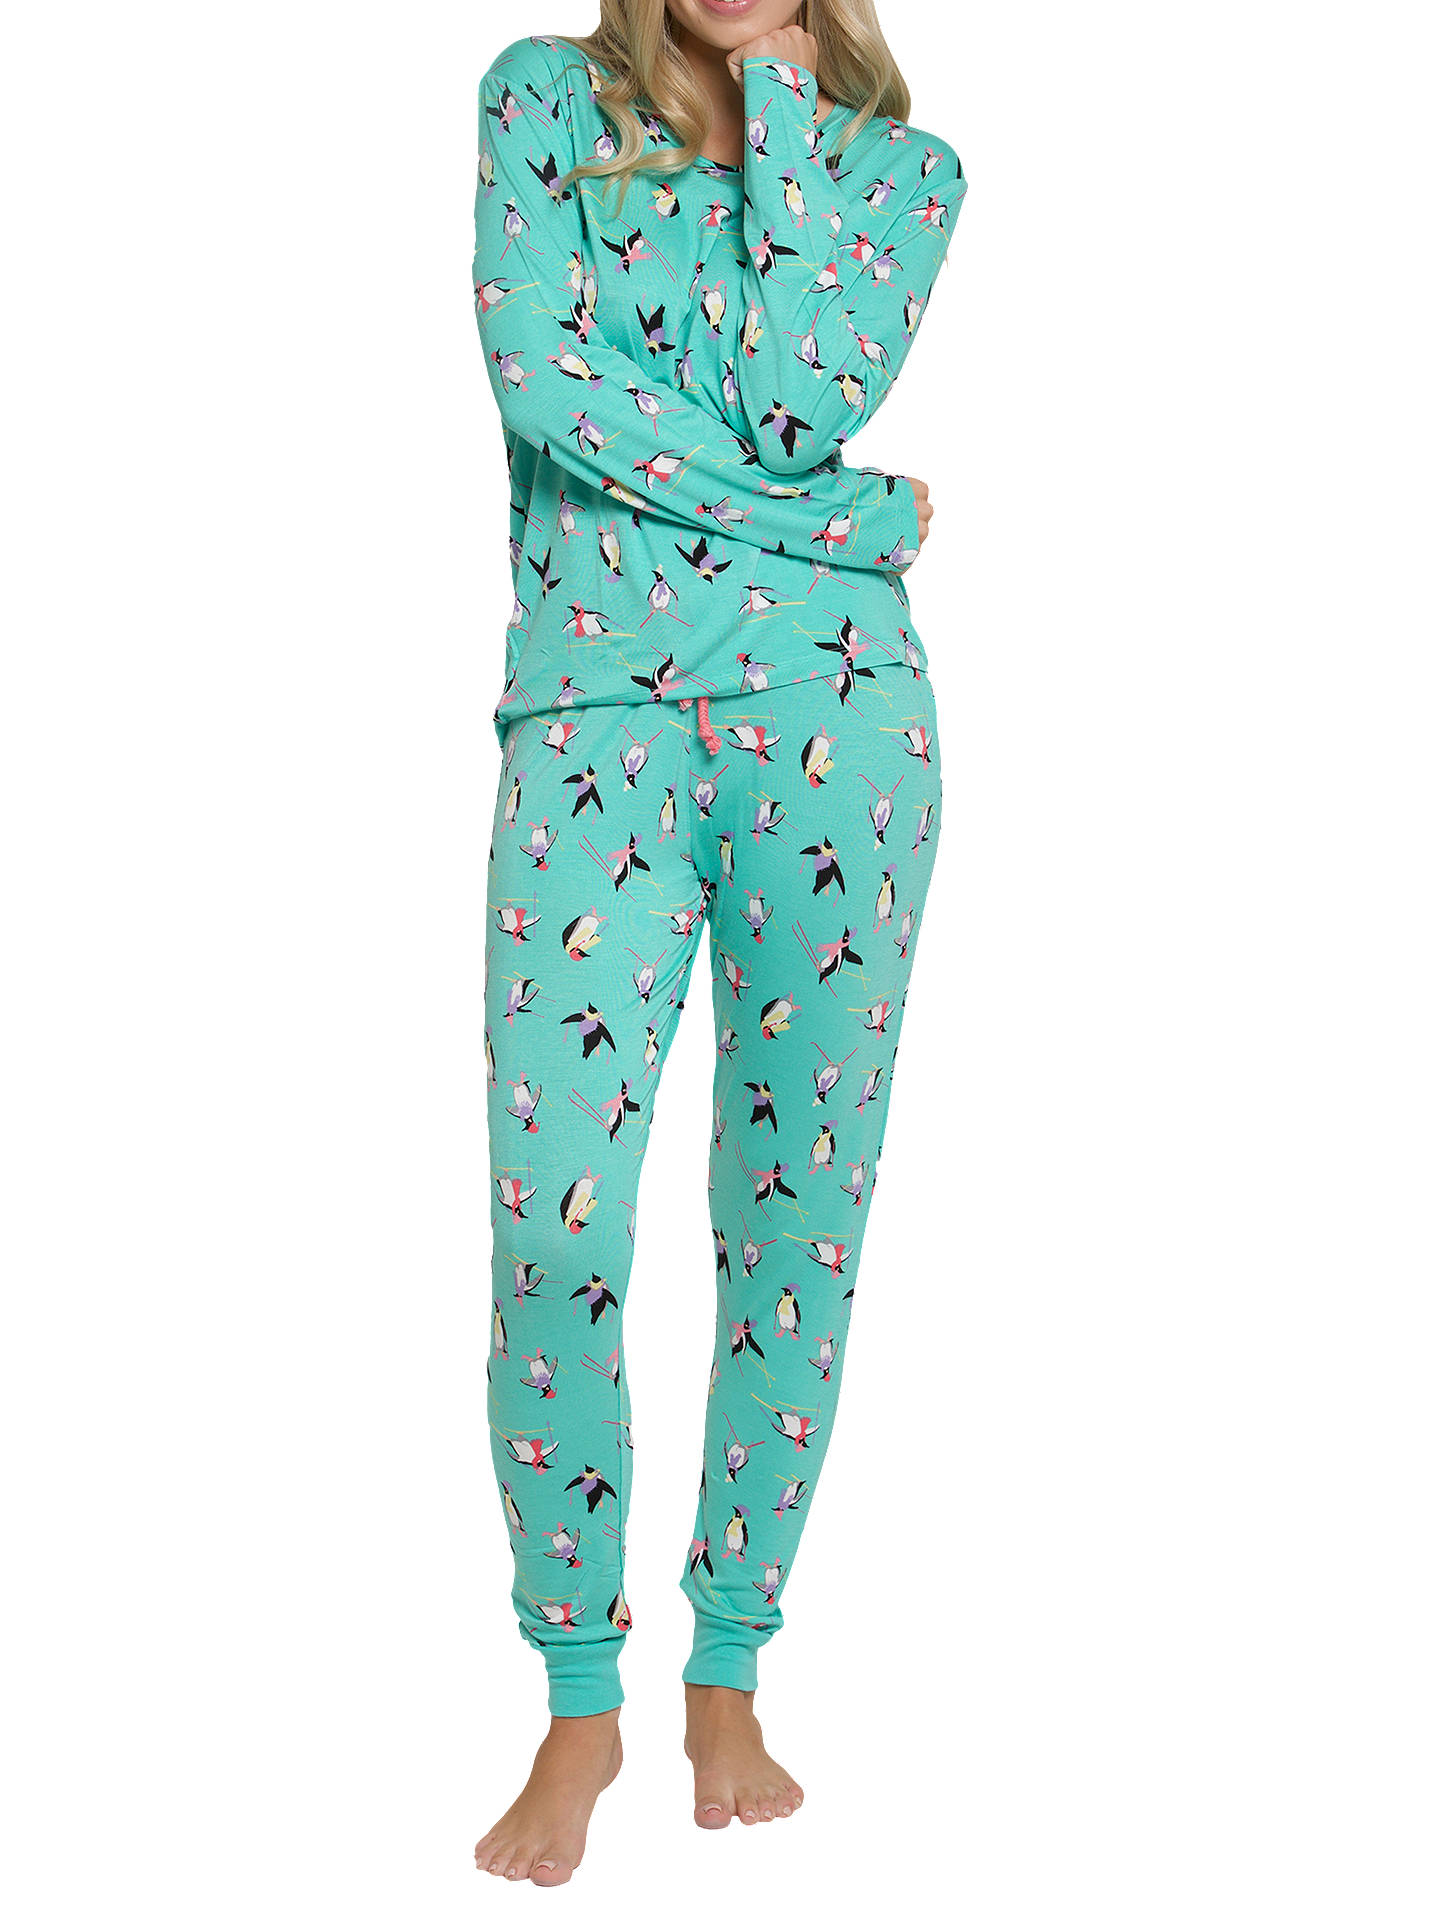 Chelsea Peers Skiing Penguin Print Pyjama Set, Turquoise ...